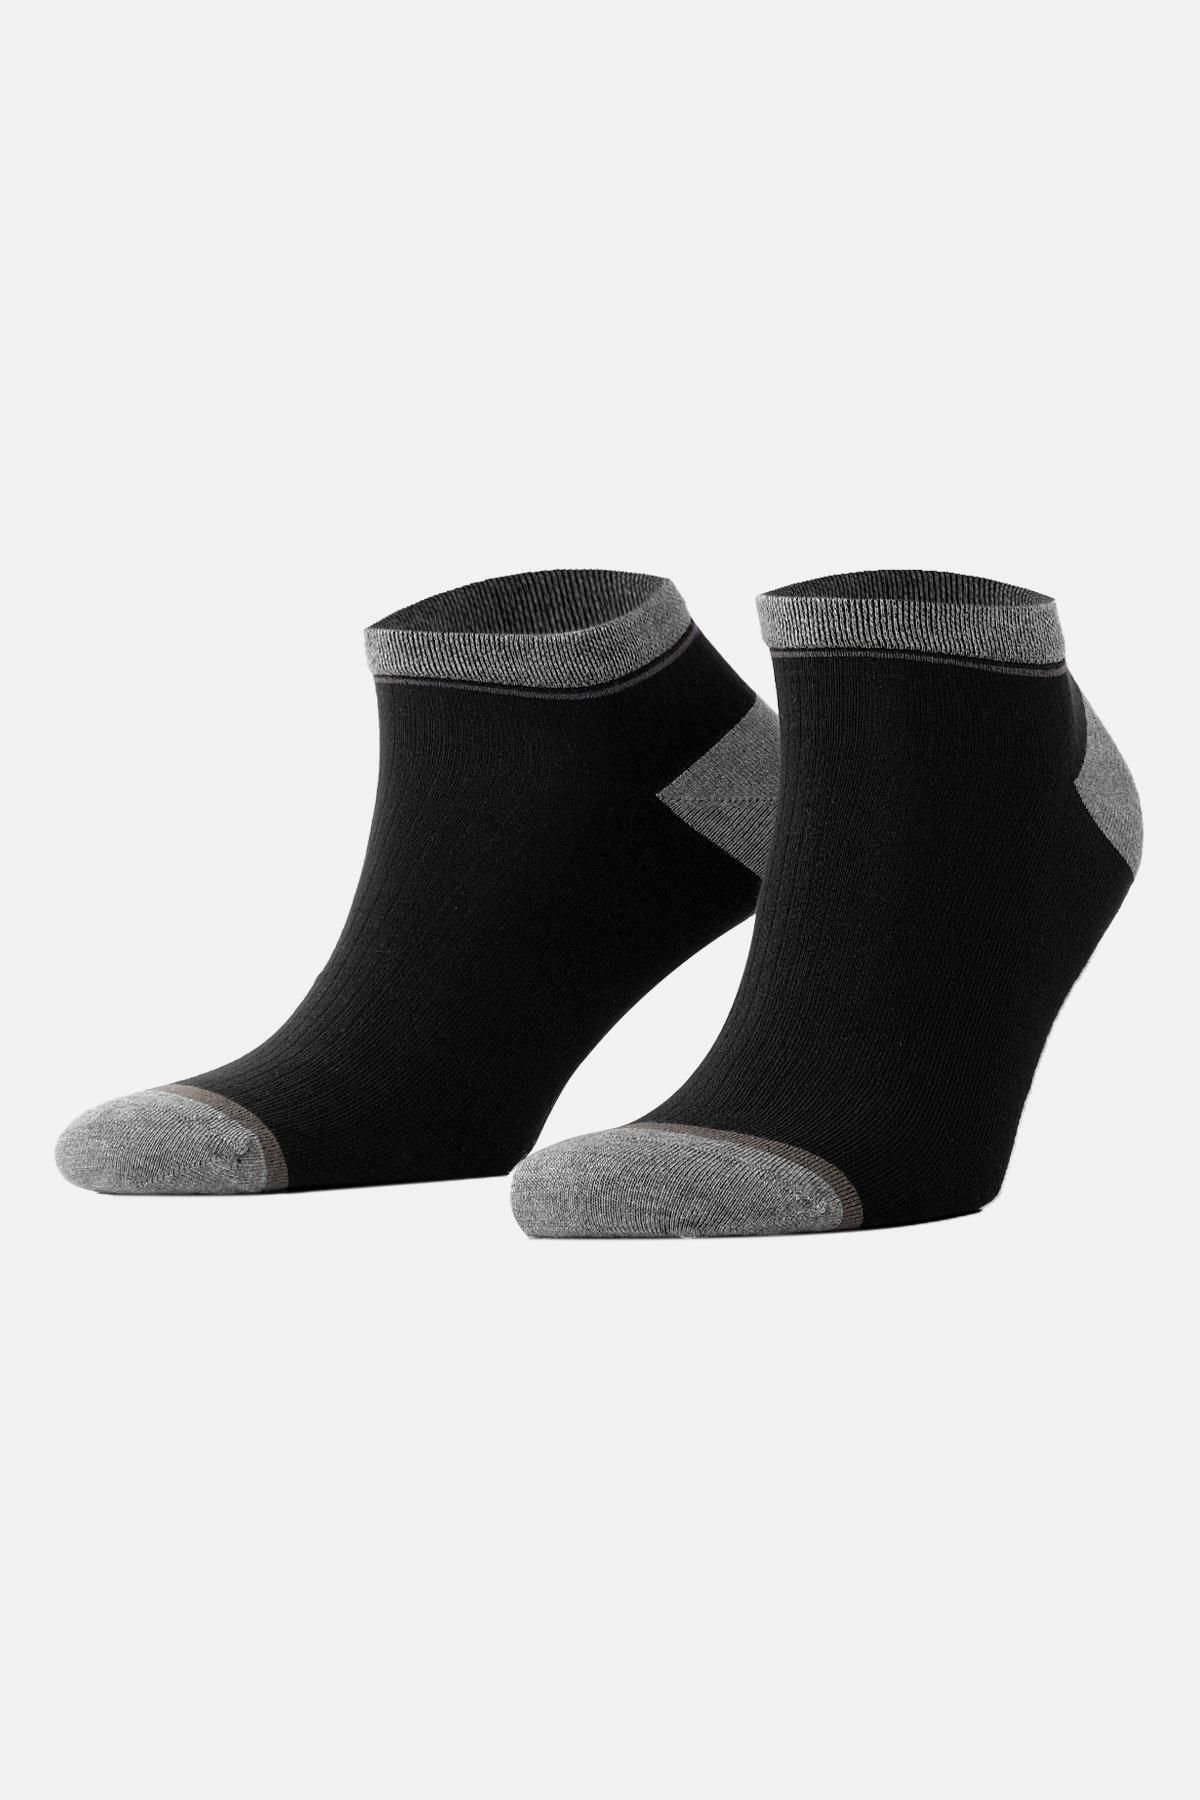 Mısırlı Erkek Modal Siyah Yazlık Patik Çorap M 61201 S